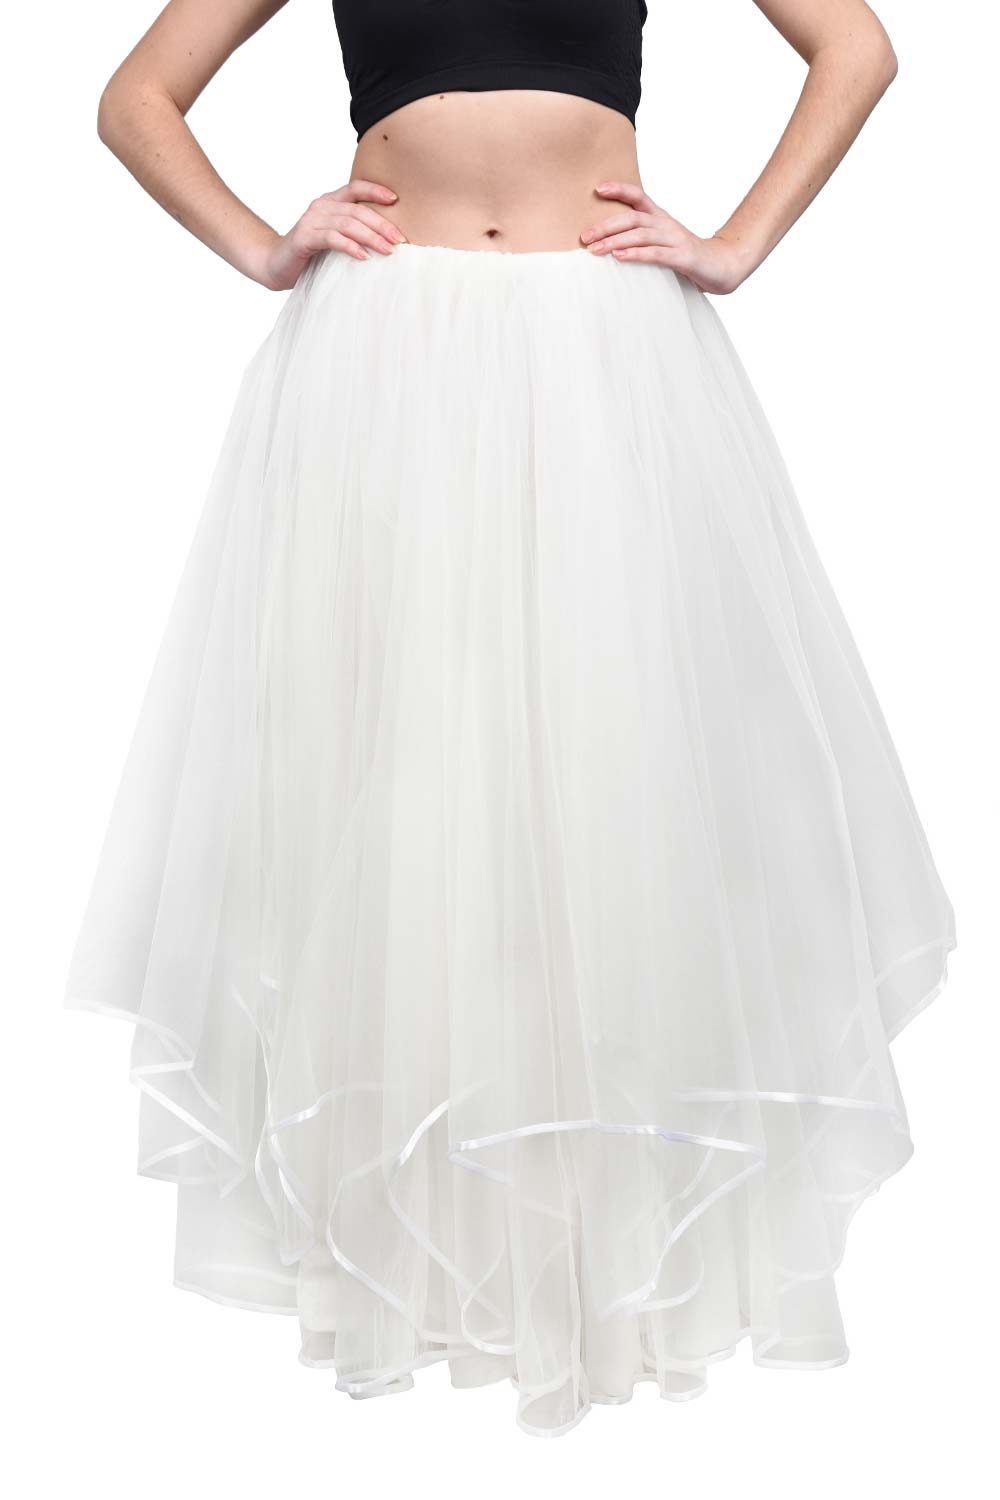 White Long Wedding Tulle Skirt Bohover 8561